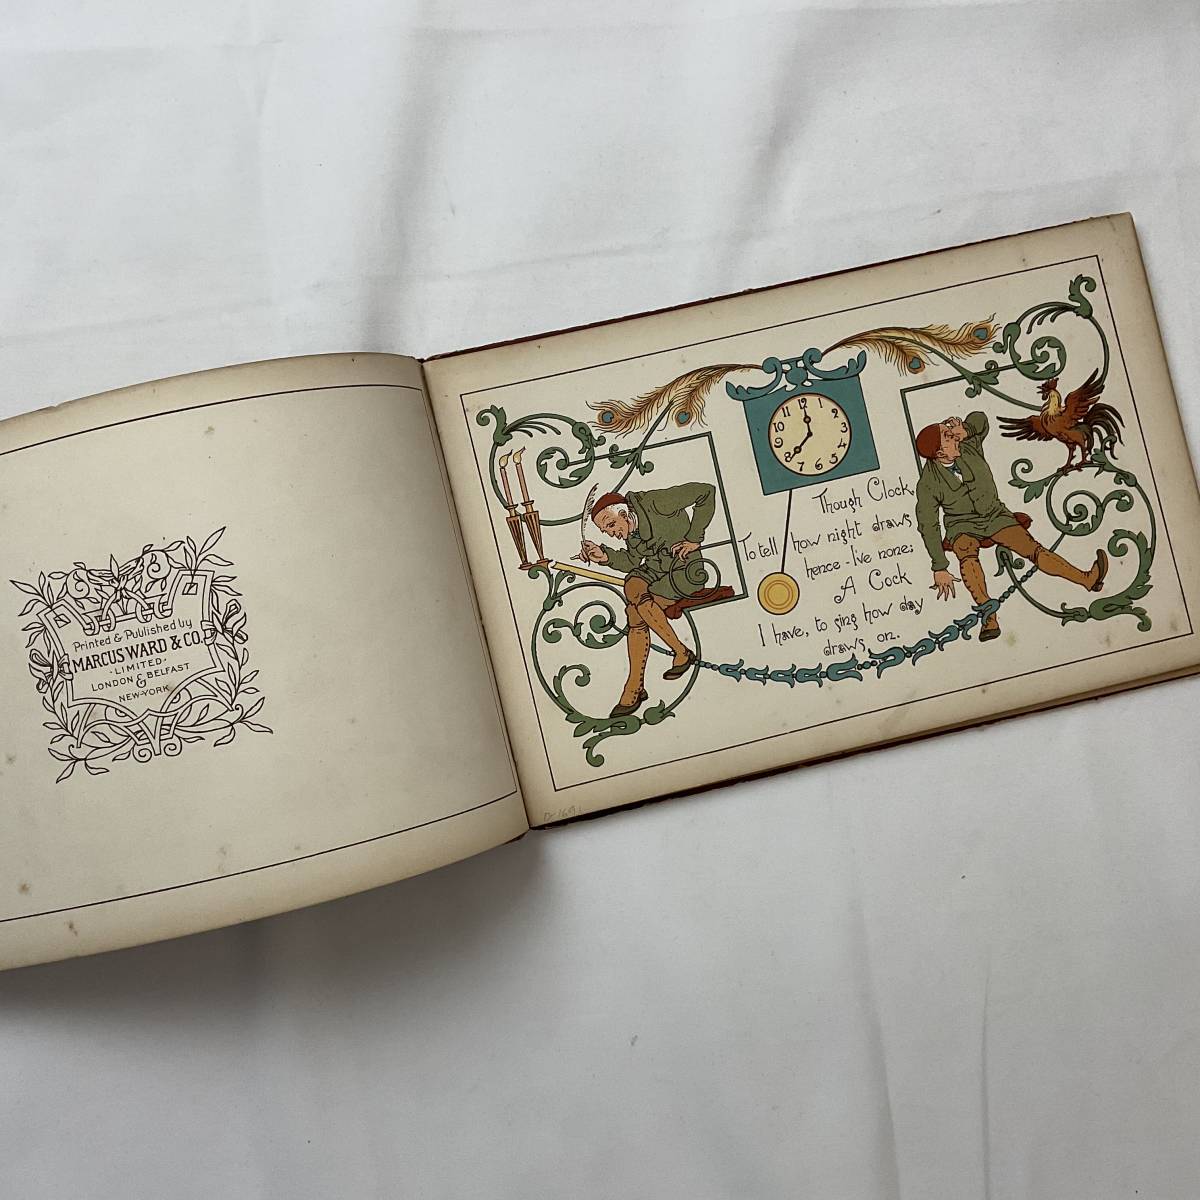 * ценный иностранная книга античный книга с картинками # шедевр Британия 1884 год Herrick s Content / осмотр : KATE GREENAWAY Kate Gree na way #ARTBOOK_OUTLET#K3-112